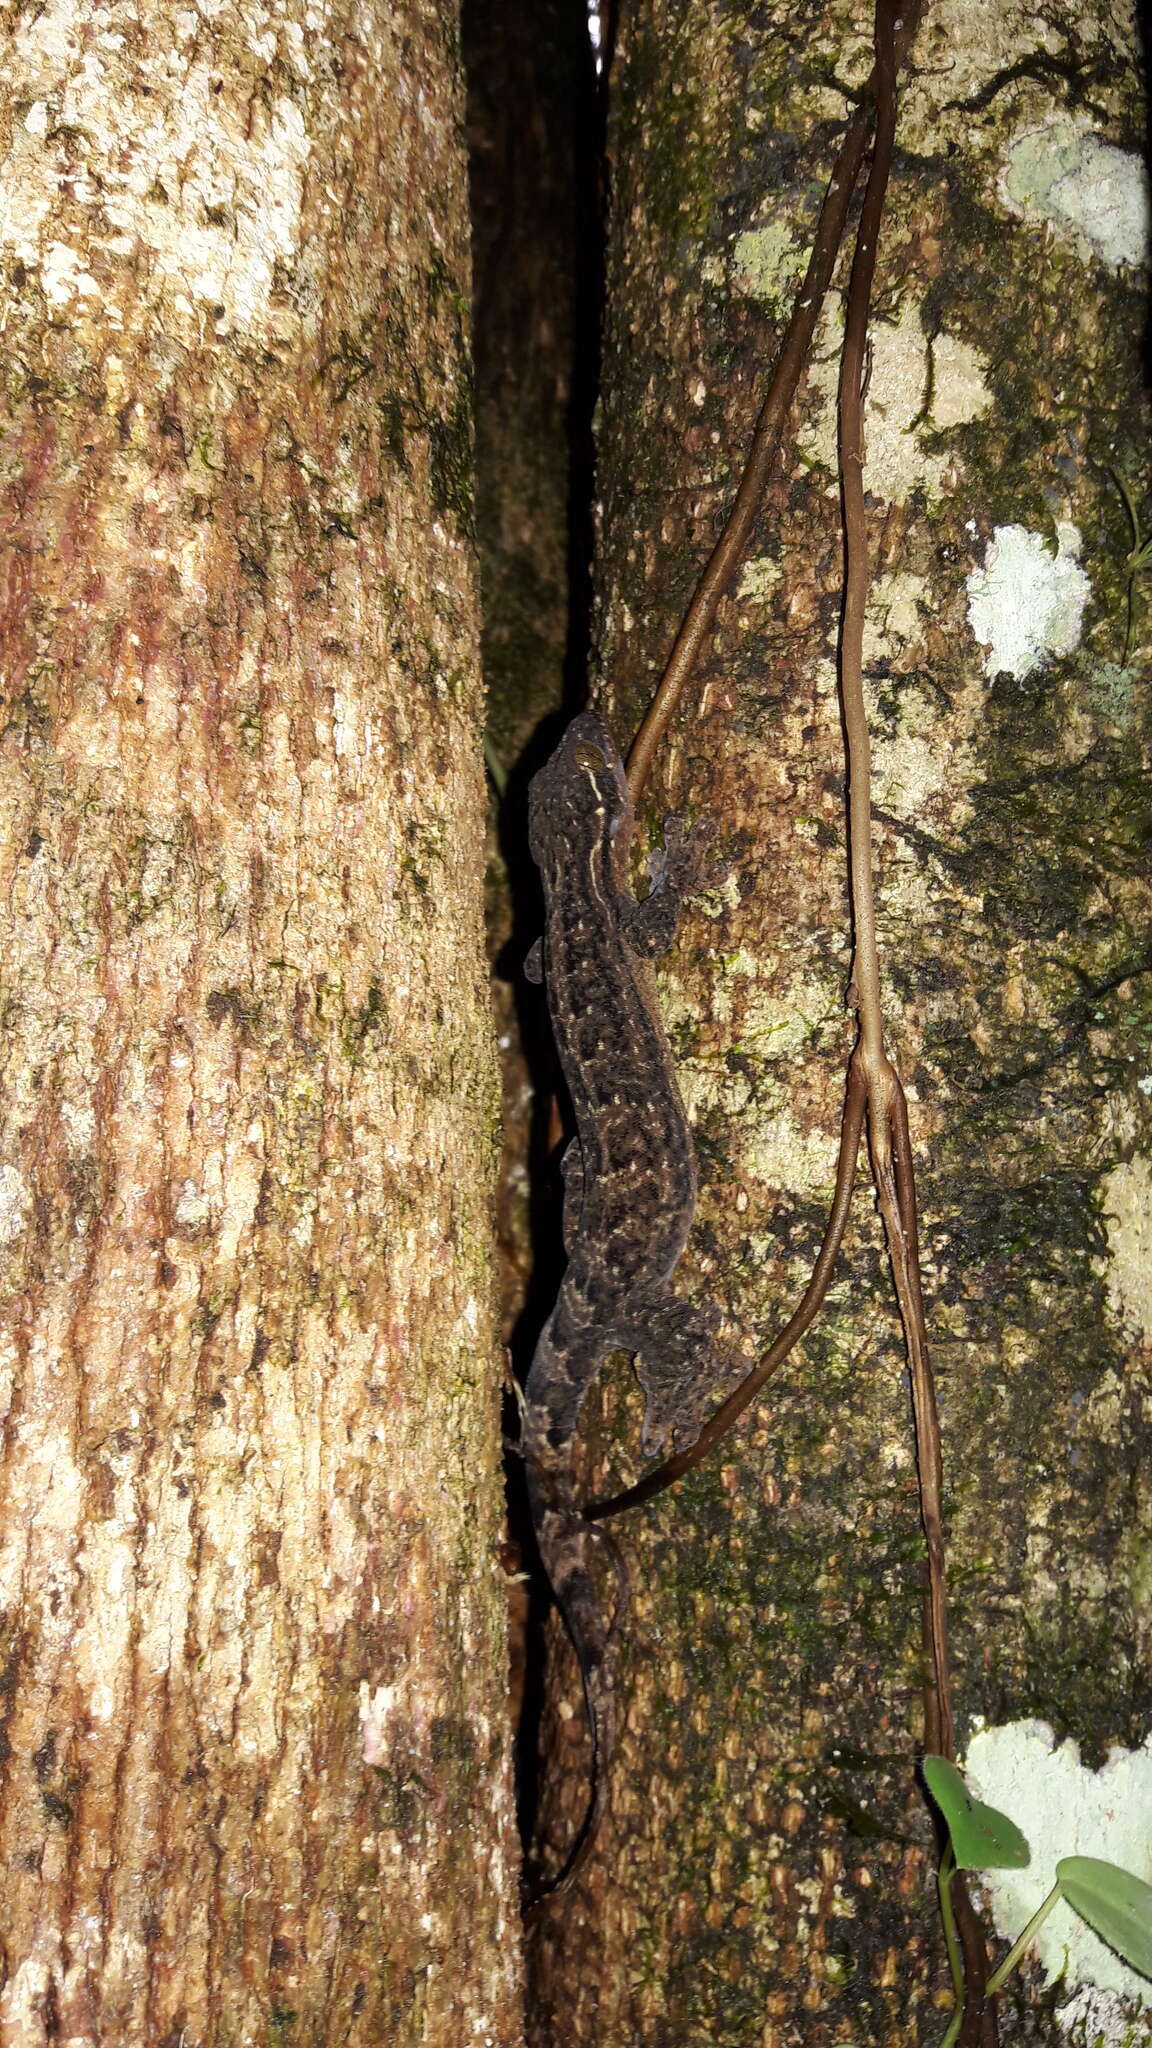 Image of turnip-tailed geckos